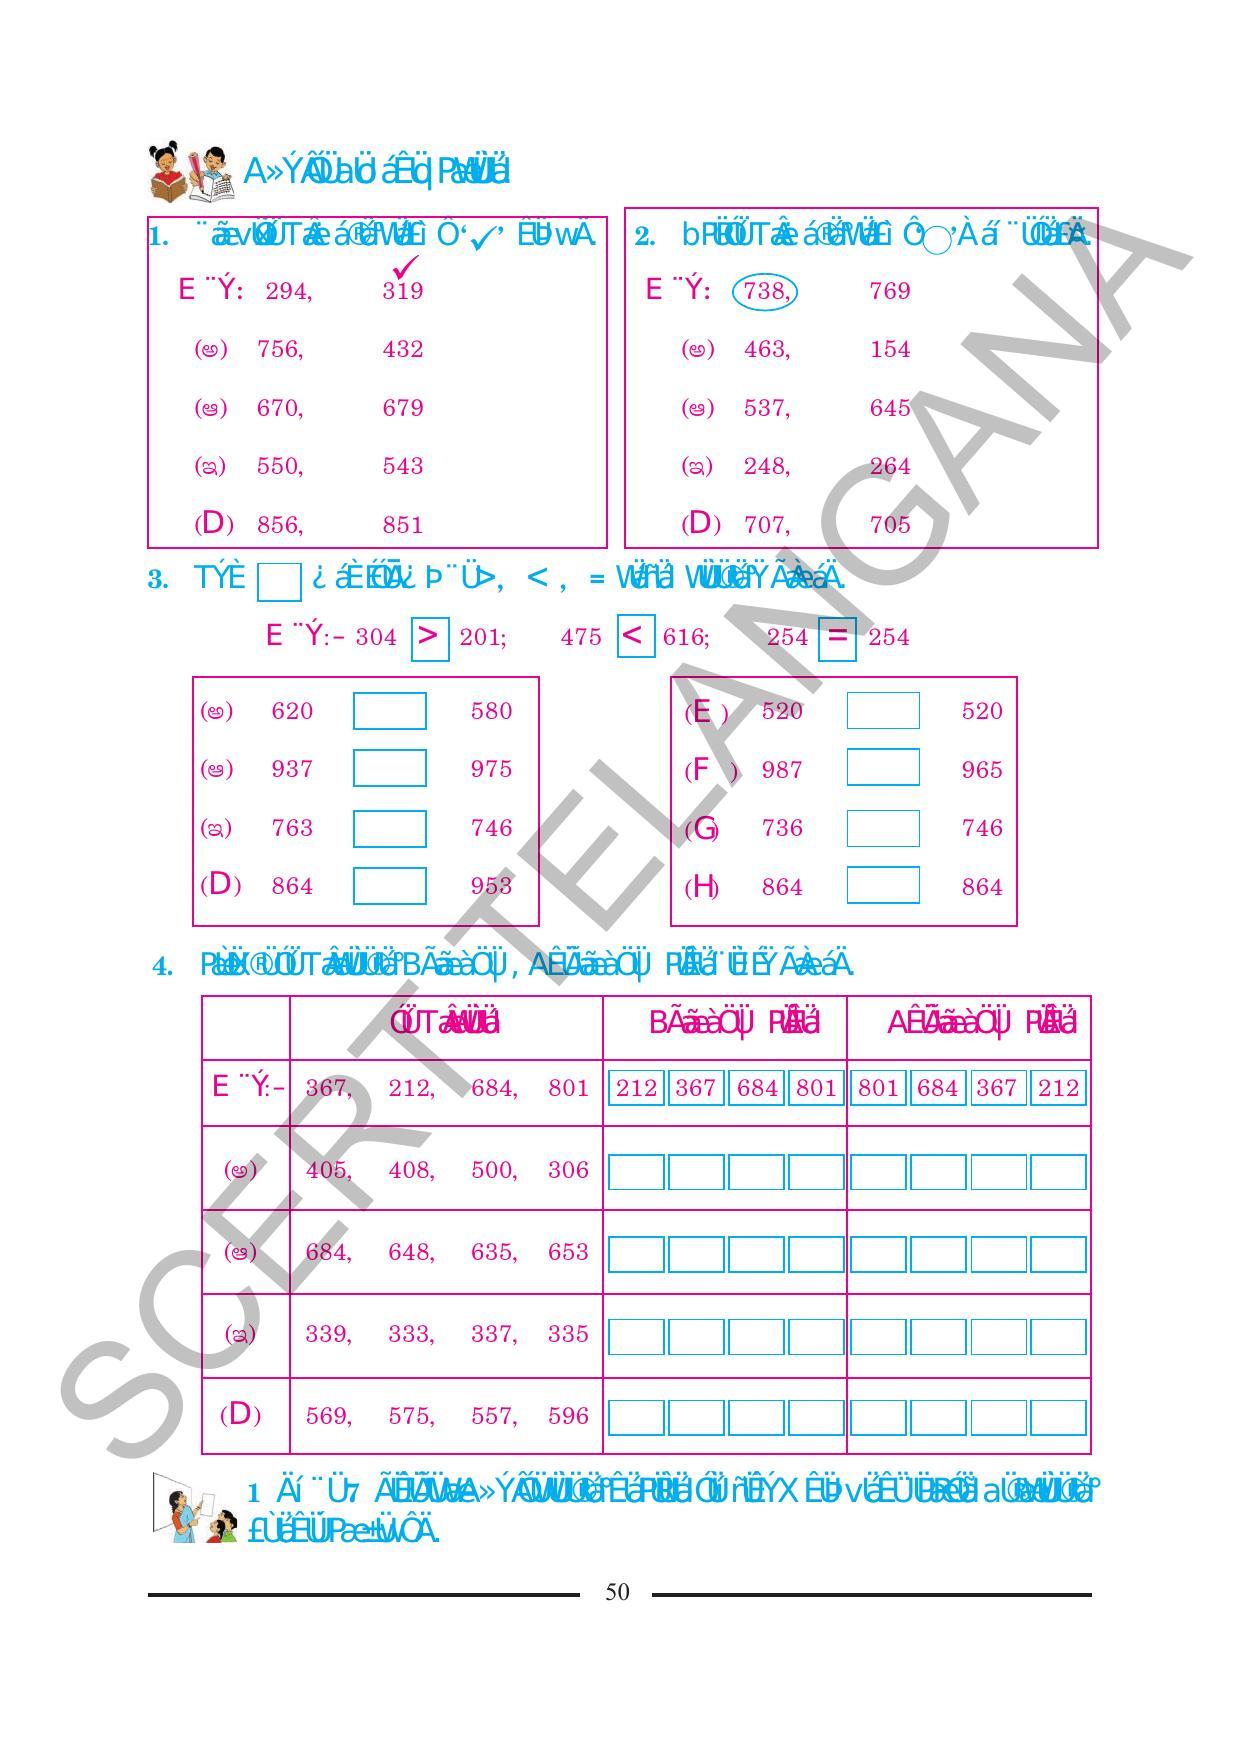 TS SCERT Class 2 Maths (Kannada Medium) Text Book - Page 62